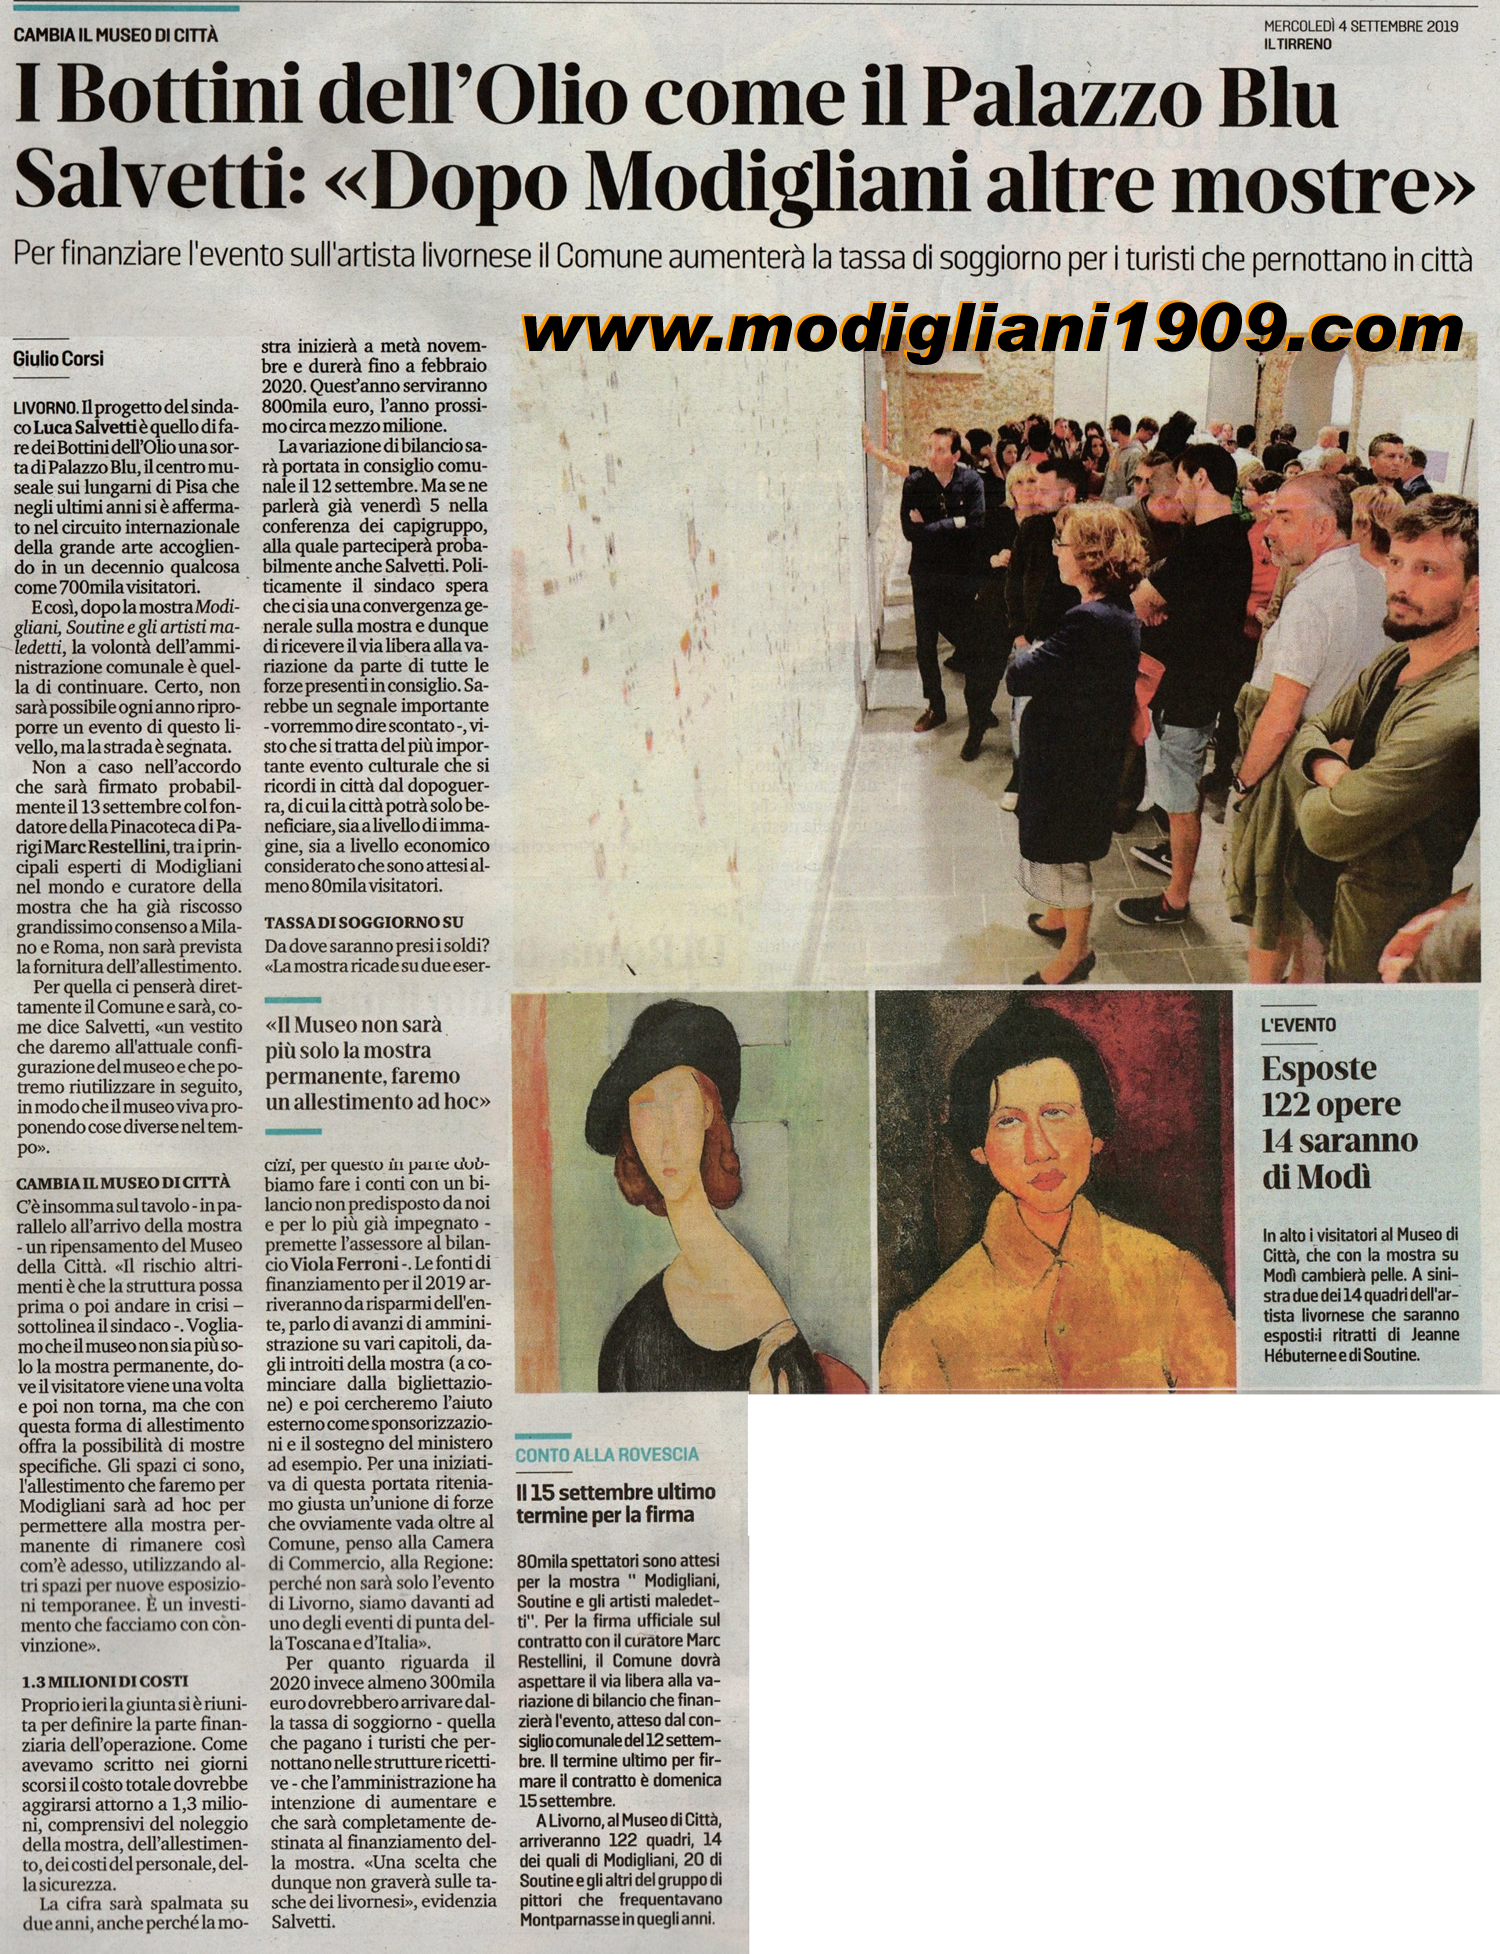 Luca Salvetti: dopo Modigliani altre mostre